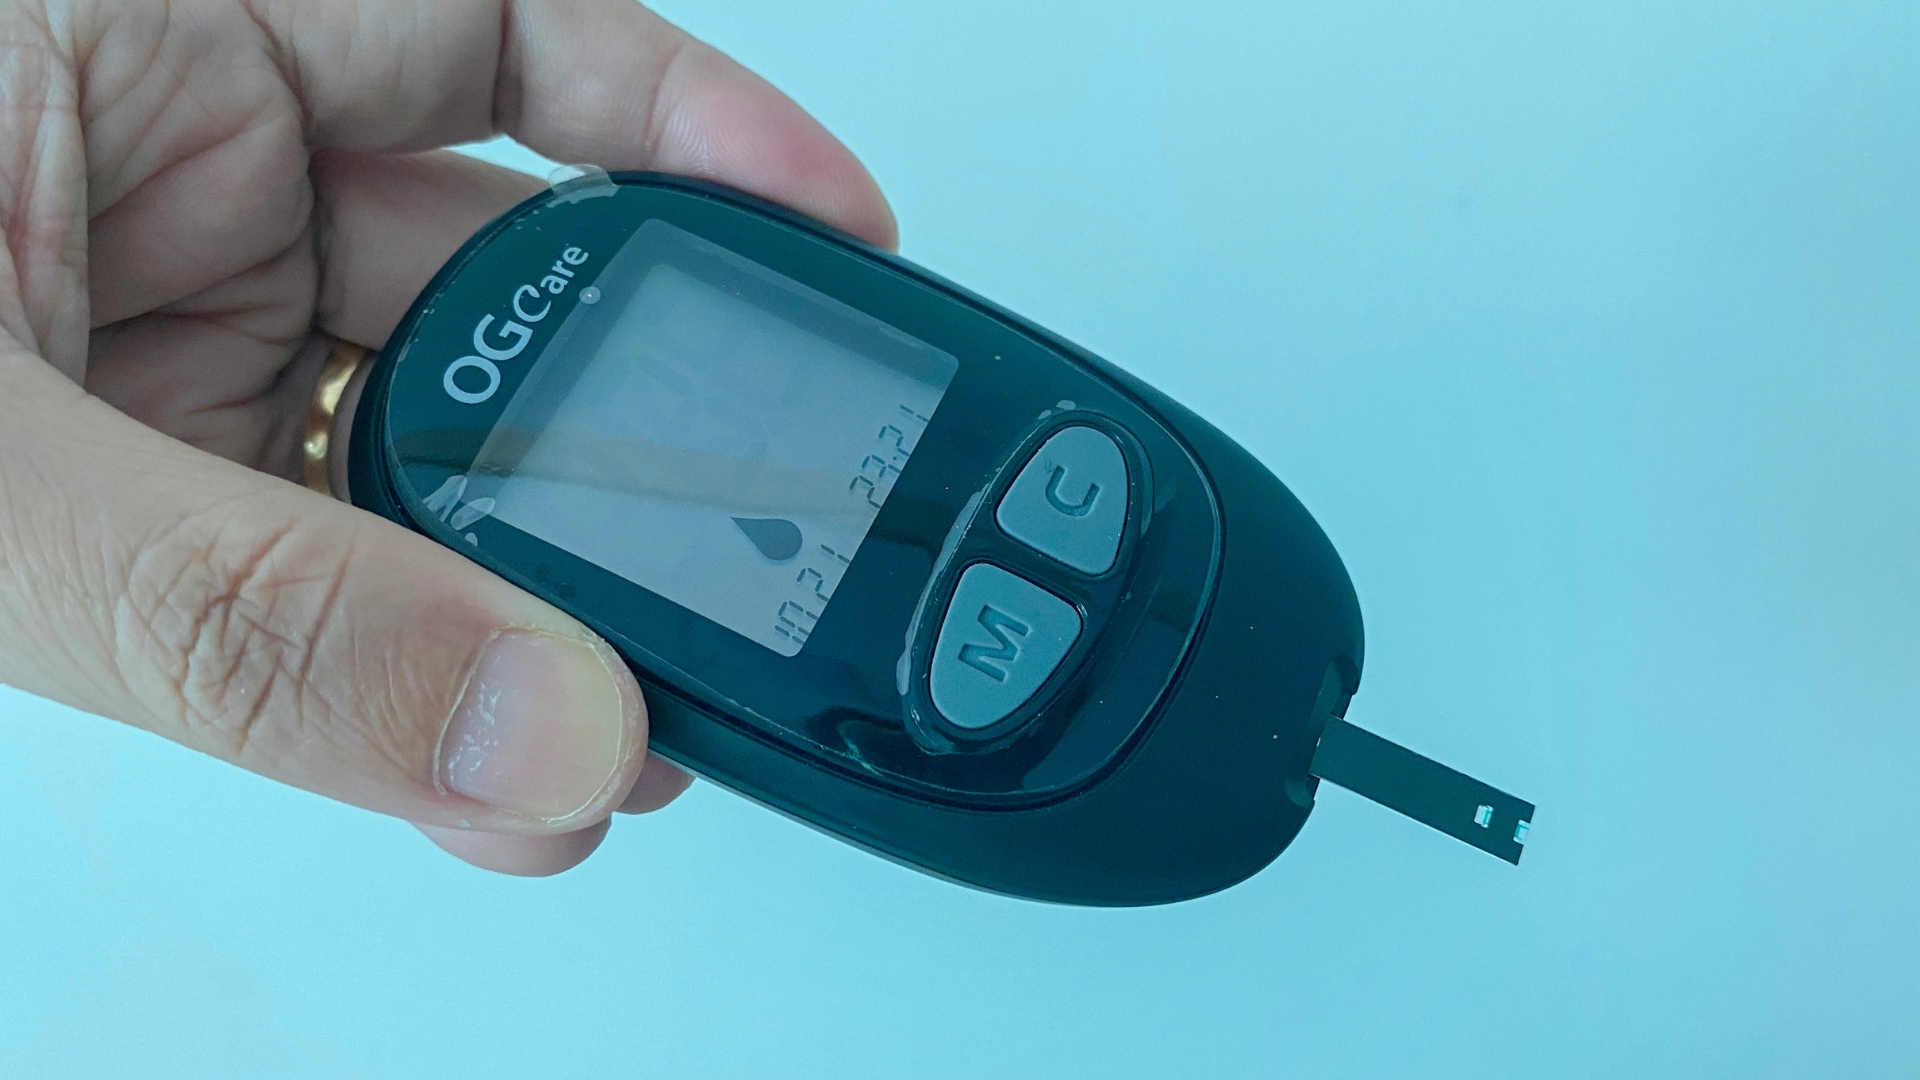 Trên tay máy đo đường huyết cá nhân Ogcare, những bước thực hiện đo đơn giản tại nhà